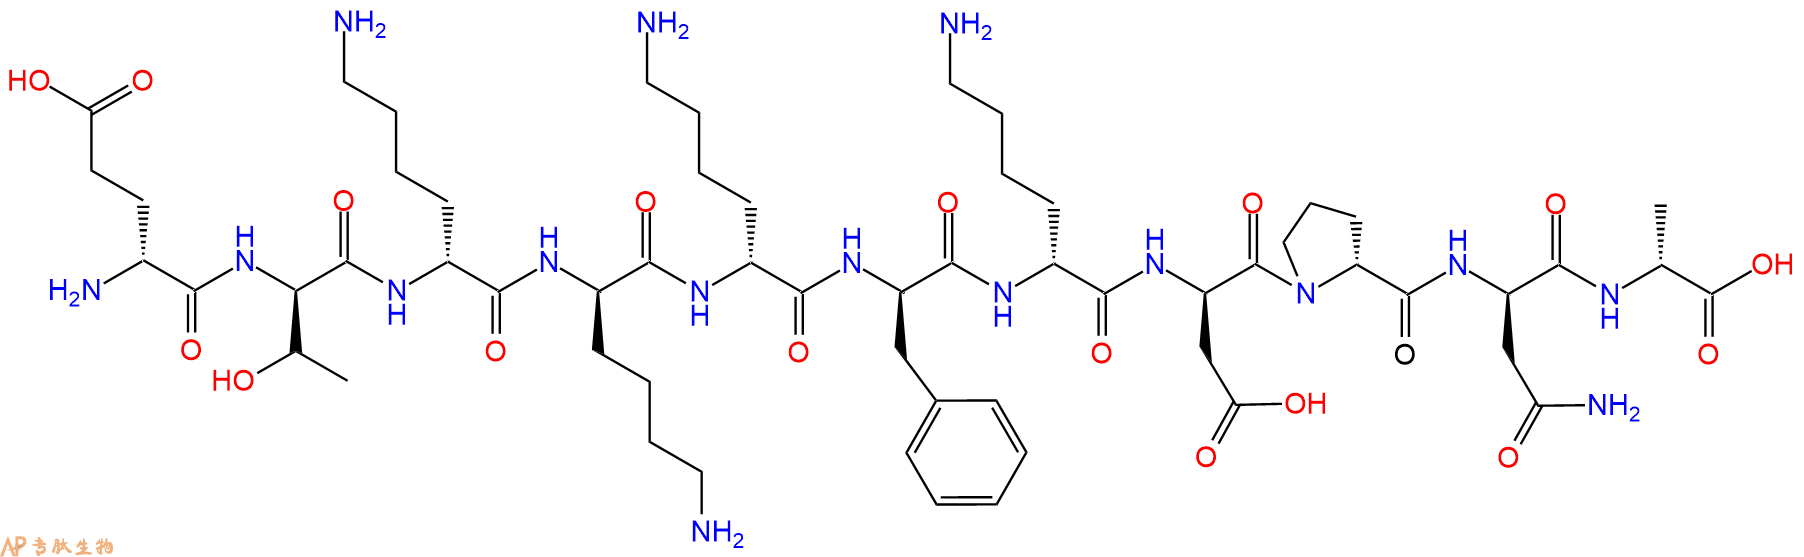 专肽生物产品H2N-DGlu-DThr-DLys-DLys-DLys-DPhe-DLys-DAsp-DPro-D